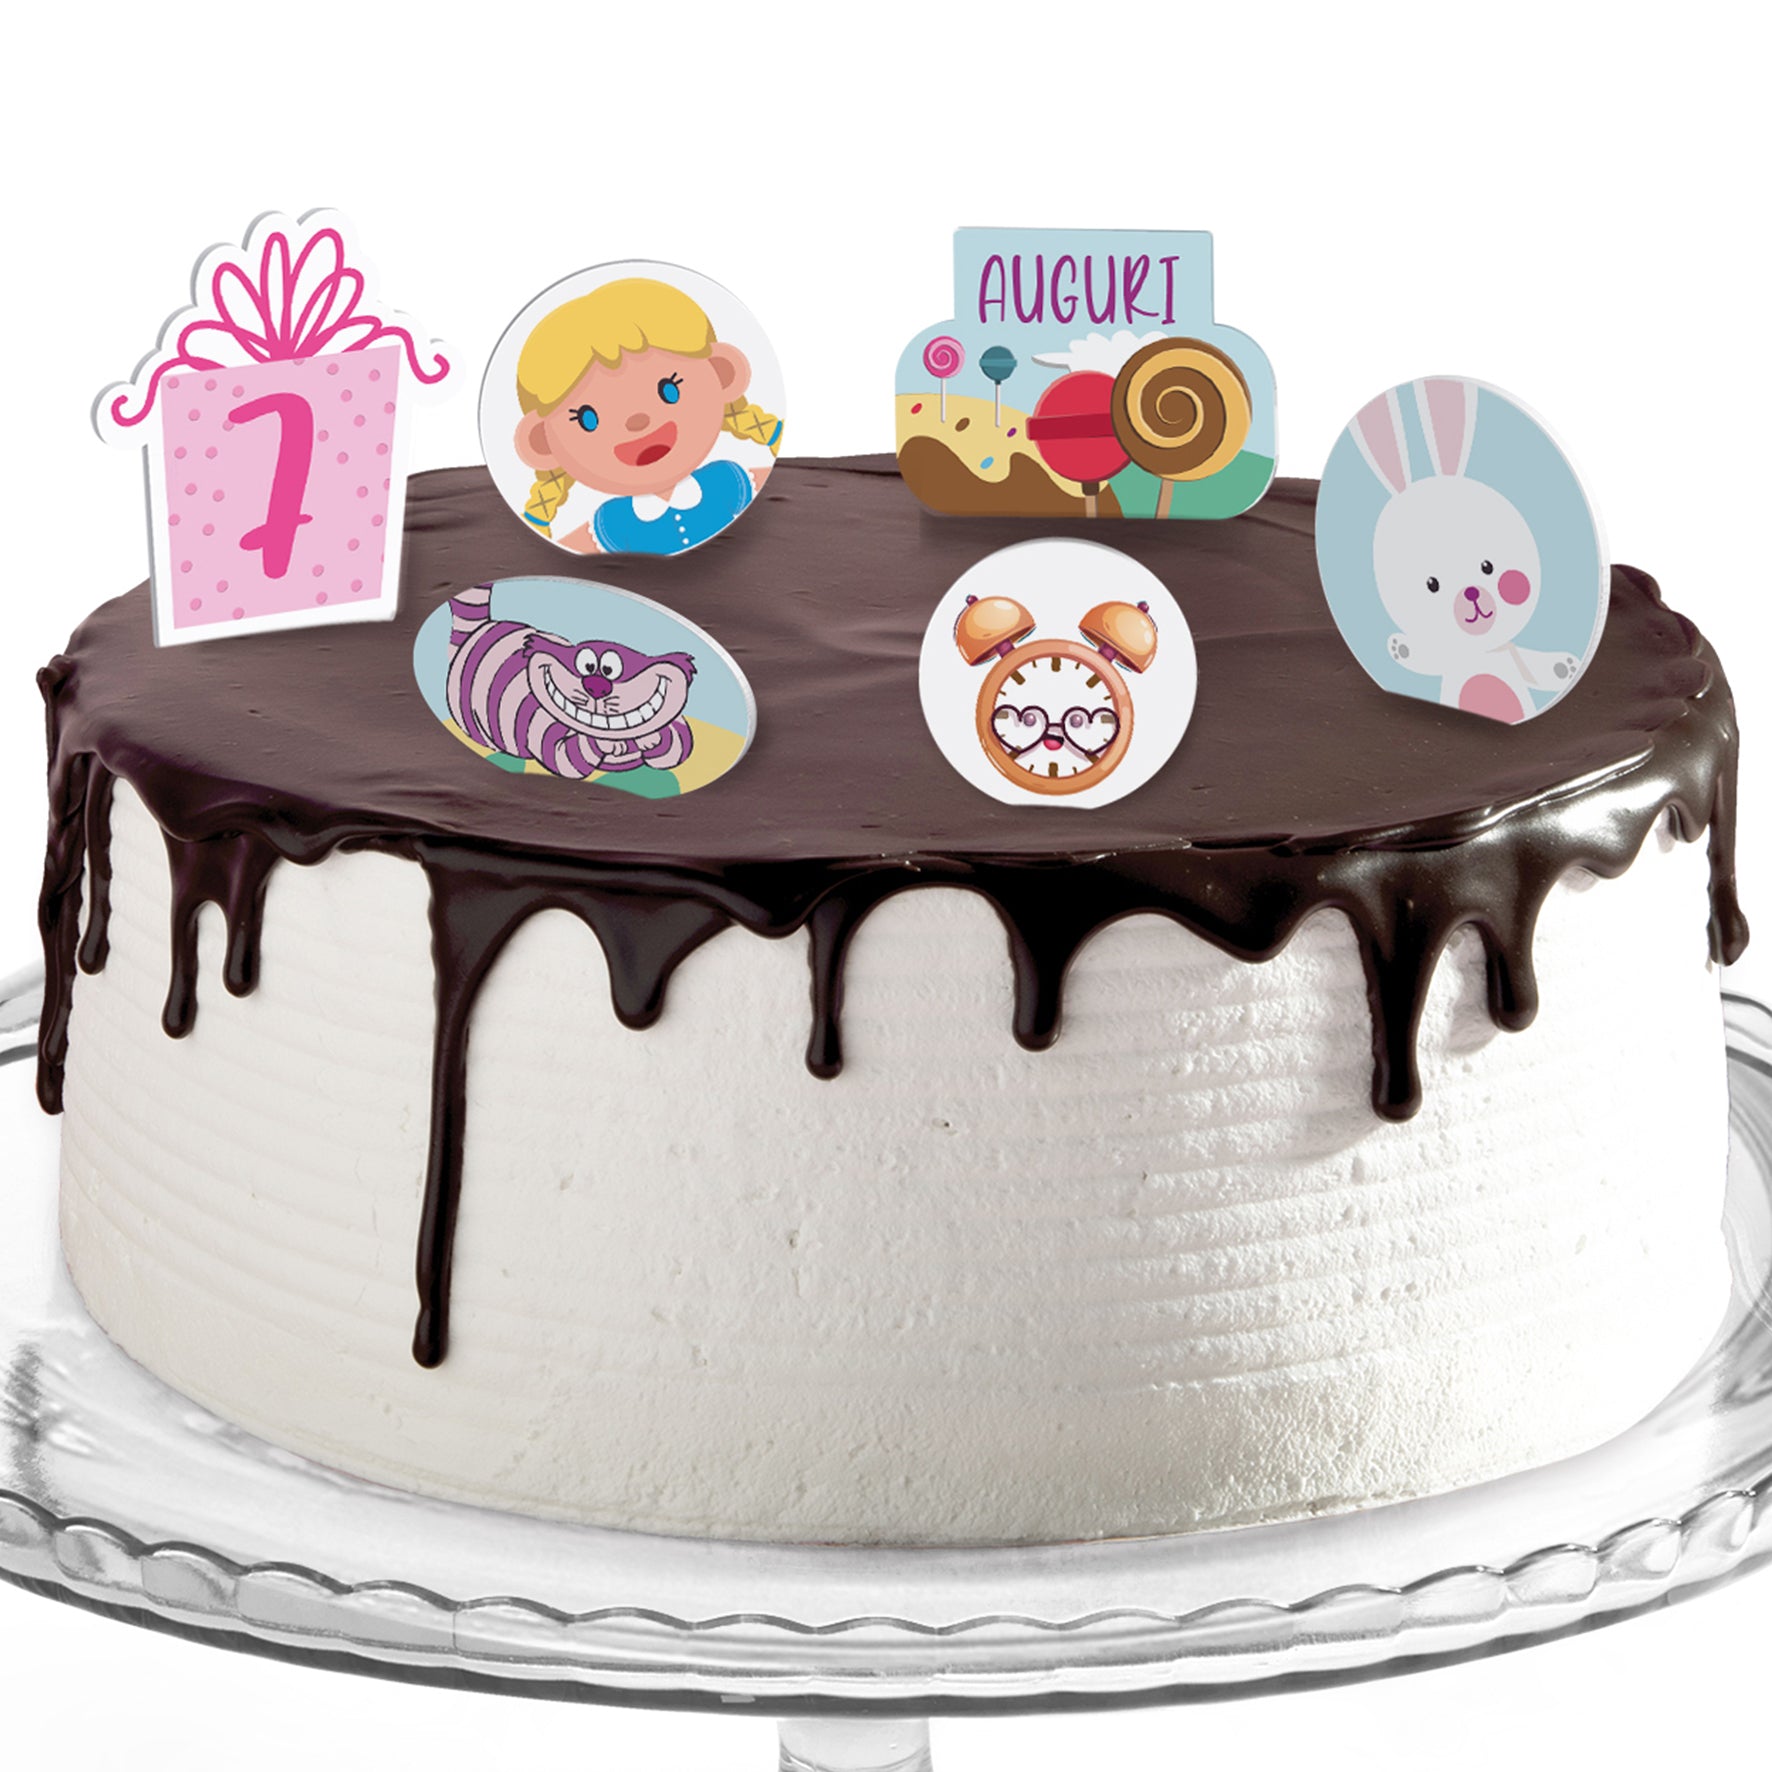 Decorazioni torte compleanno tema alice nel paese delle meraviglie